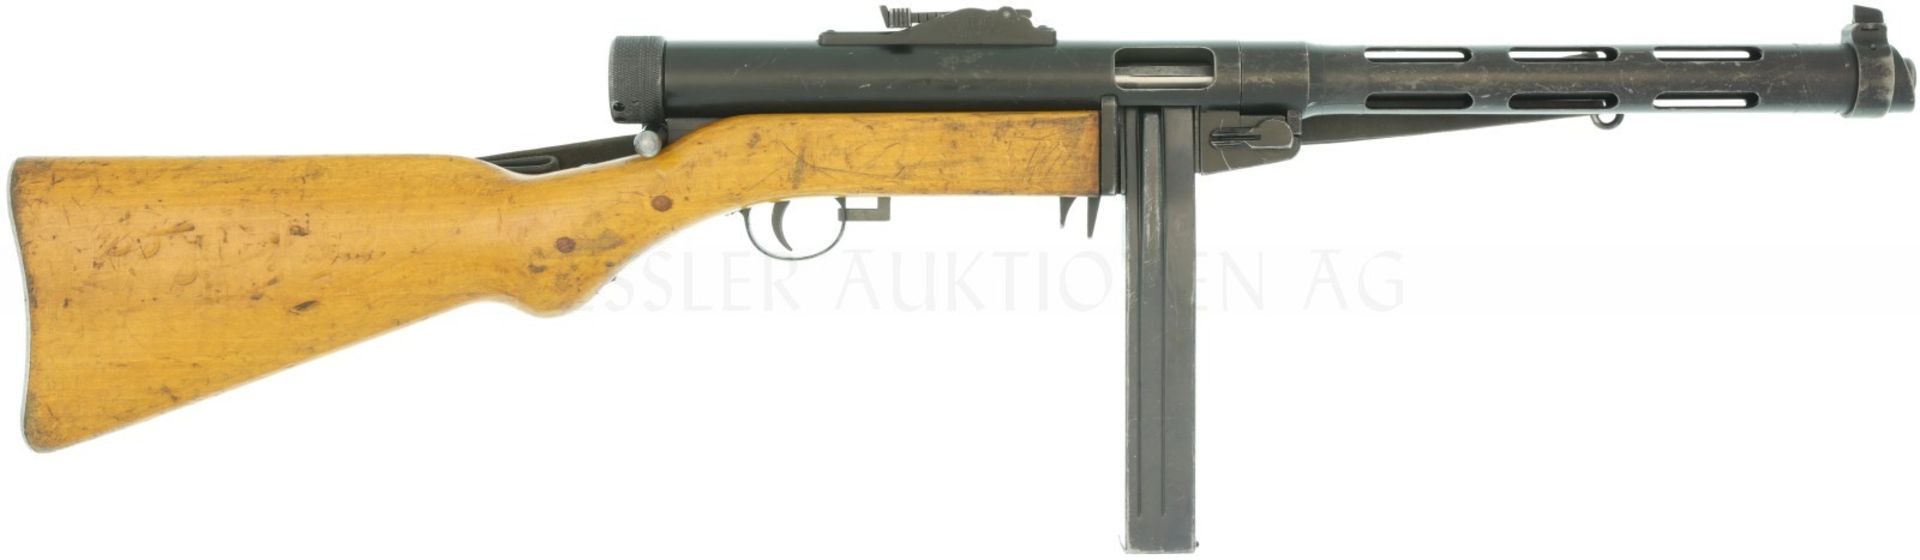 Maschinenpistole, Tikkakoski Suomi, MP 43/44, Kal. 9mmP